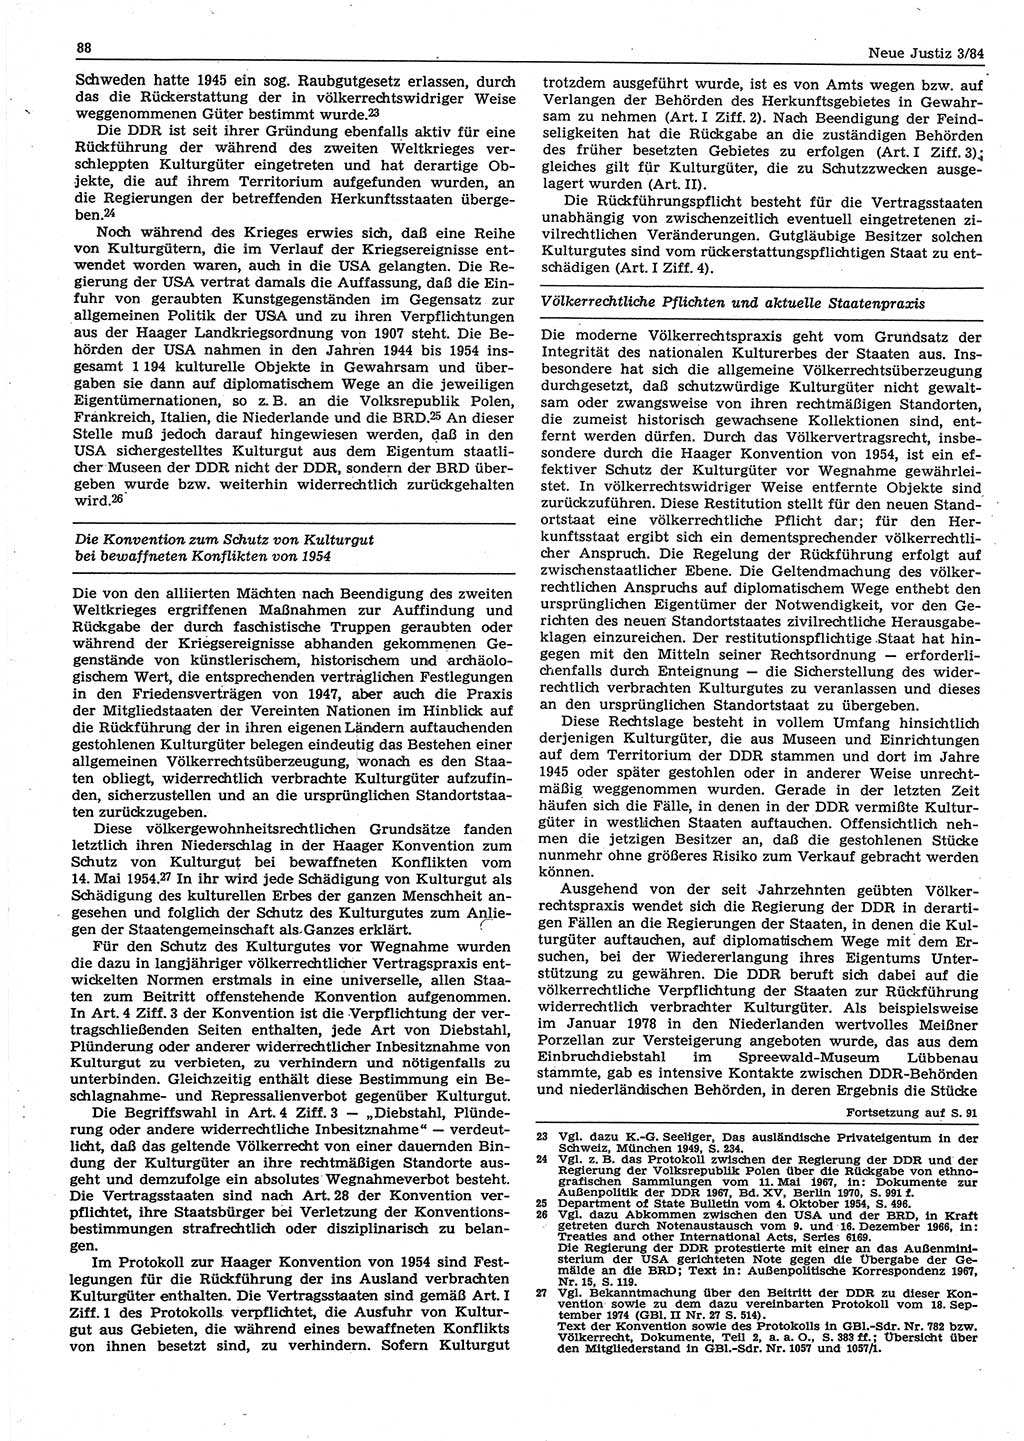 Neue Justiz (NJ), Zeitschrift für sozialistisches Recht und Gesetzlichkeit [Deutsche Demokratische Republik (DDR)], 38. Jahrgang 1984, Seite 88 (NJ DDR 1984, S. 88)